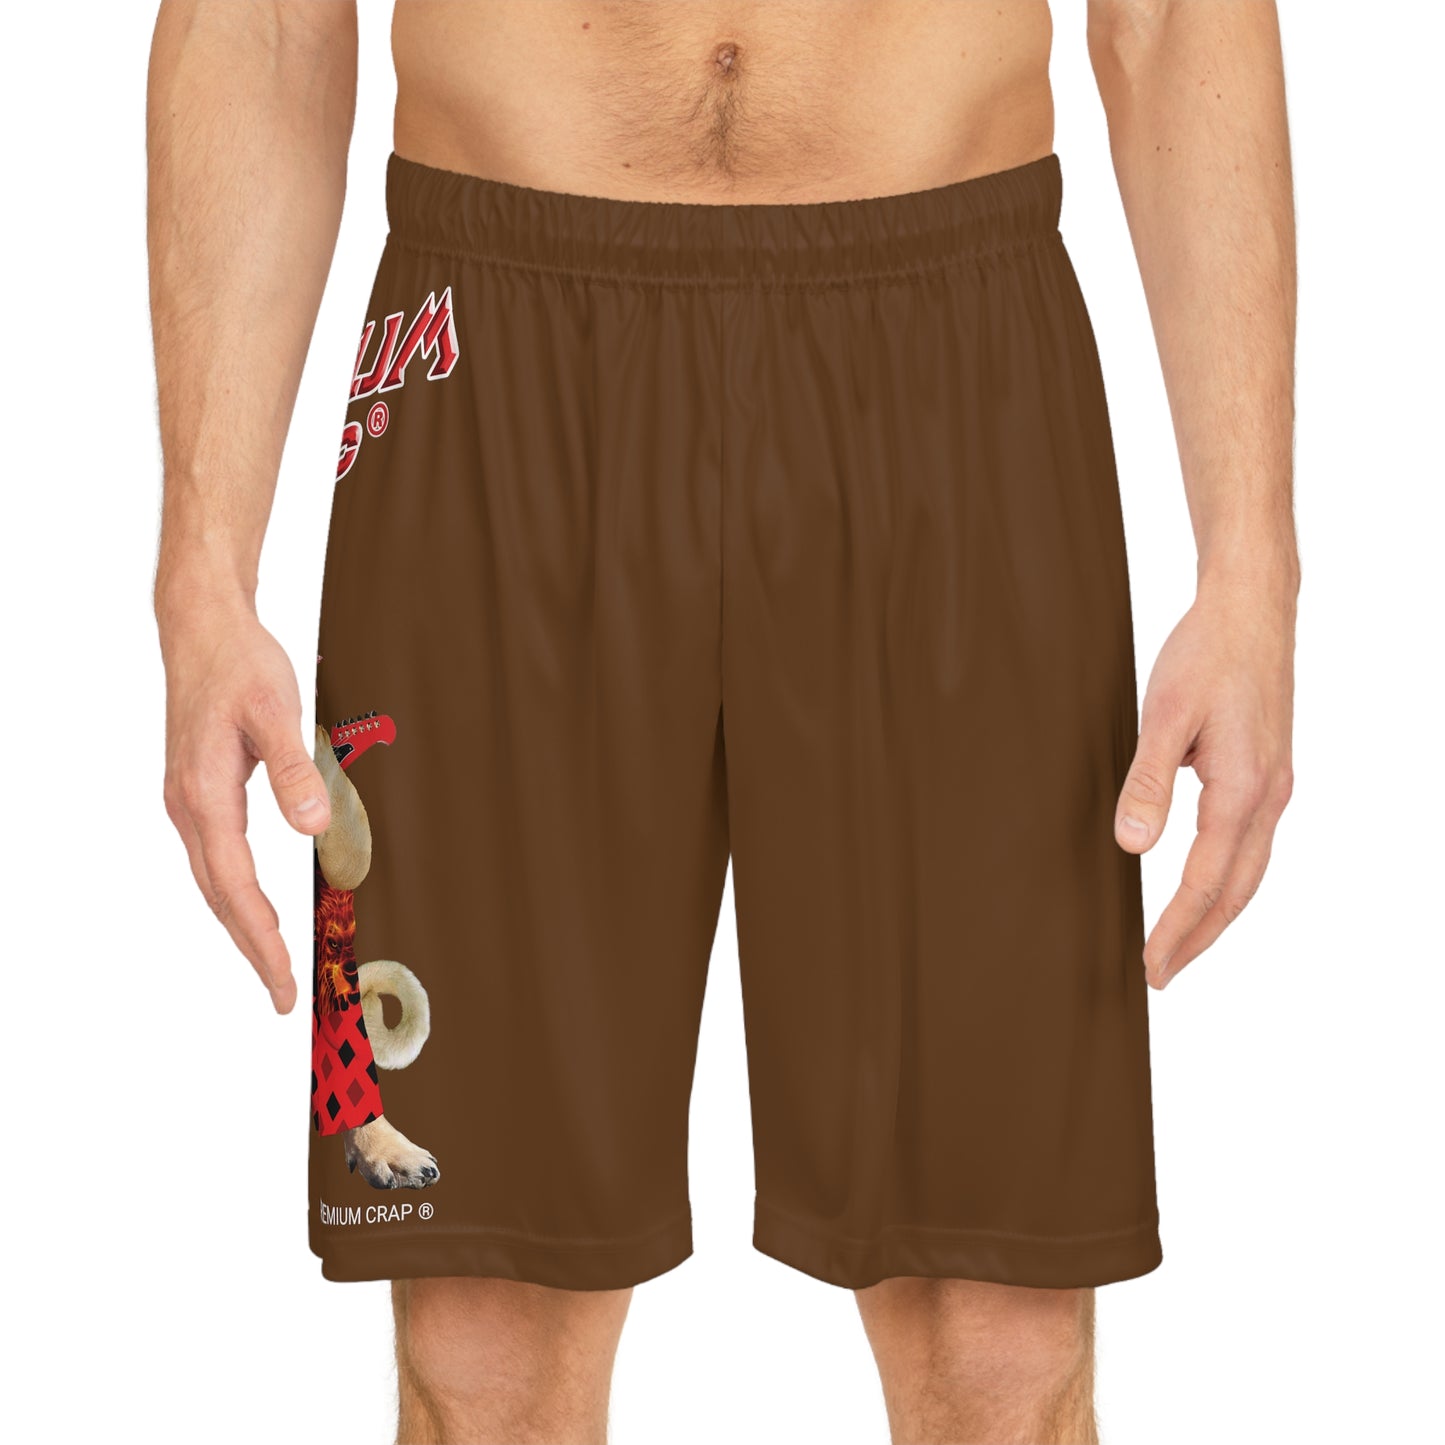 Premium Crap II Basketball Shorts - Brown